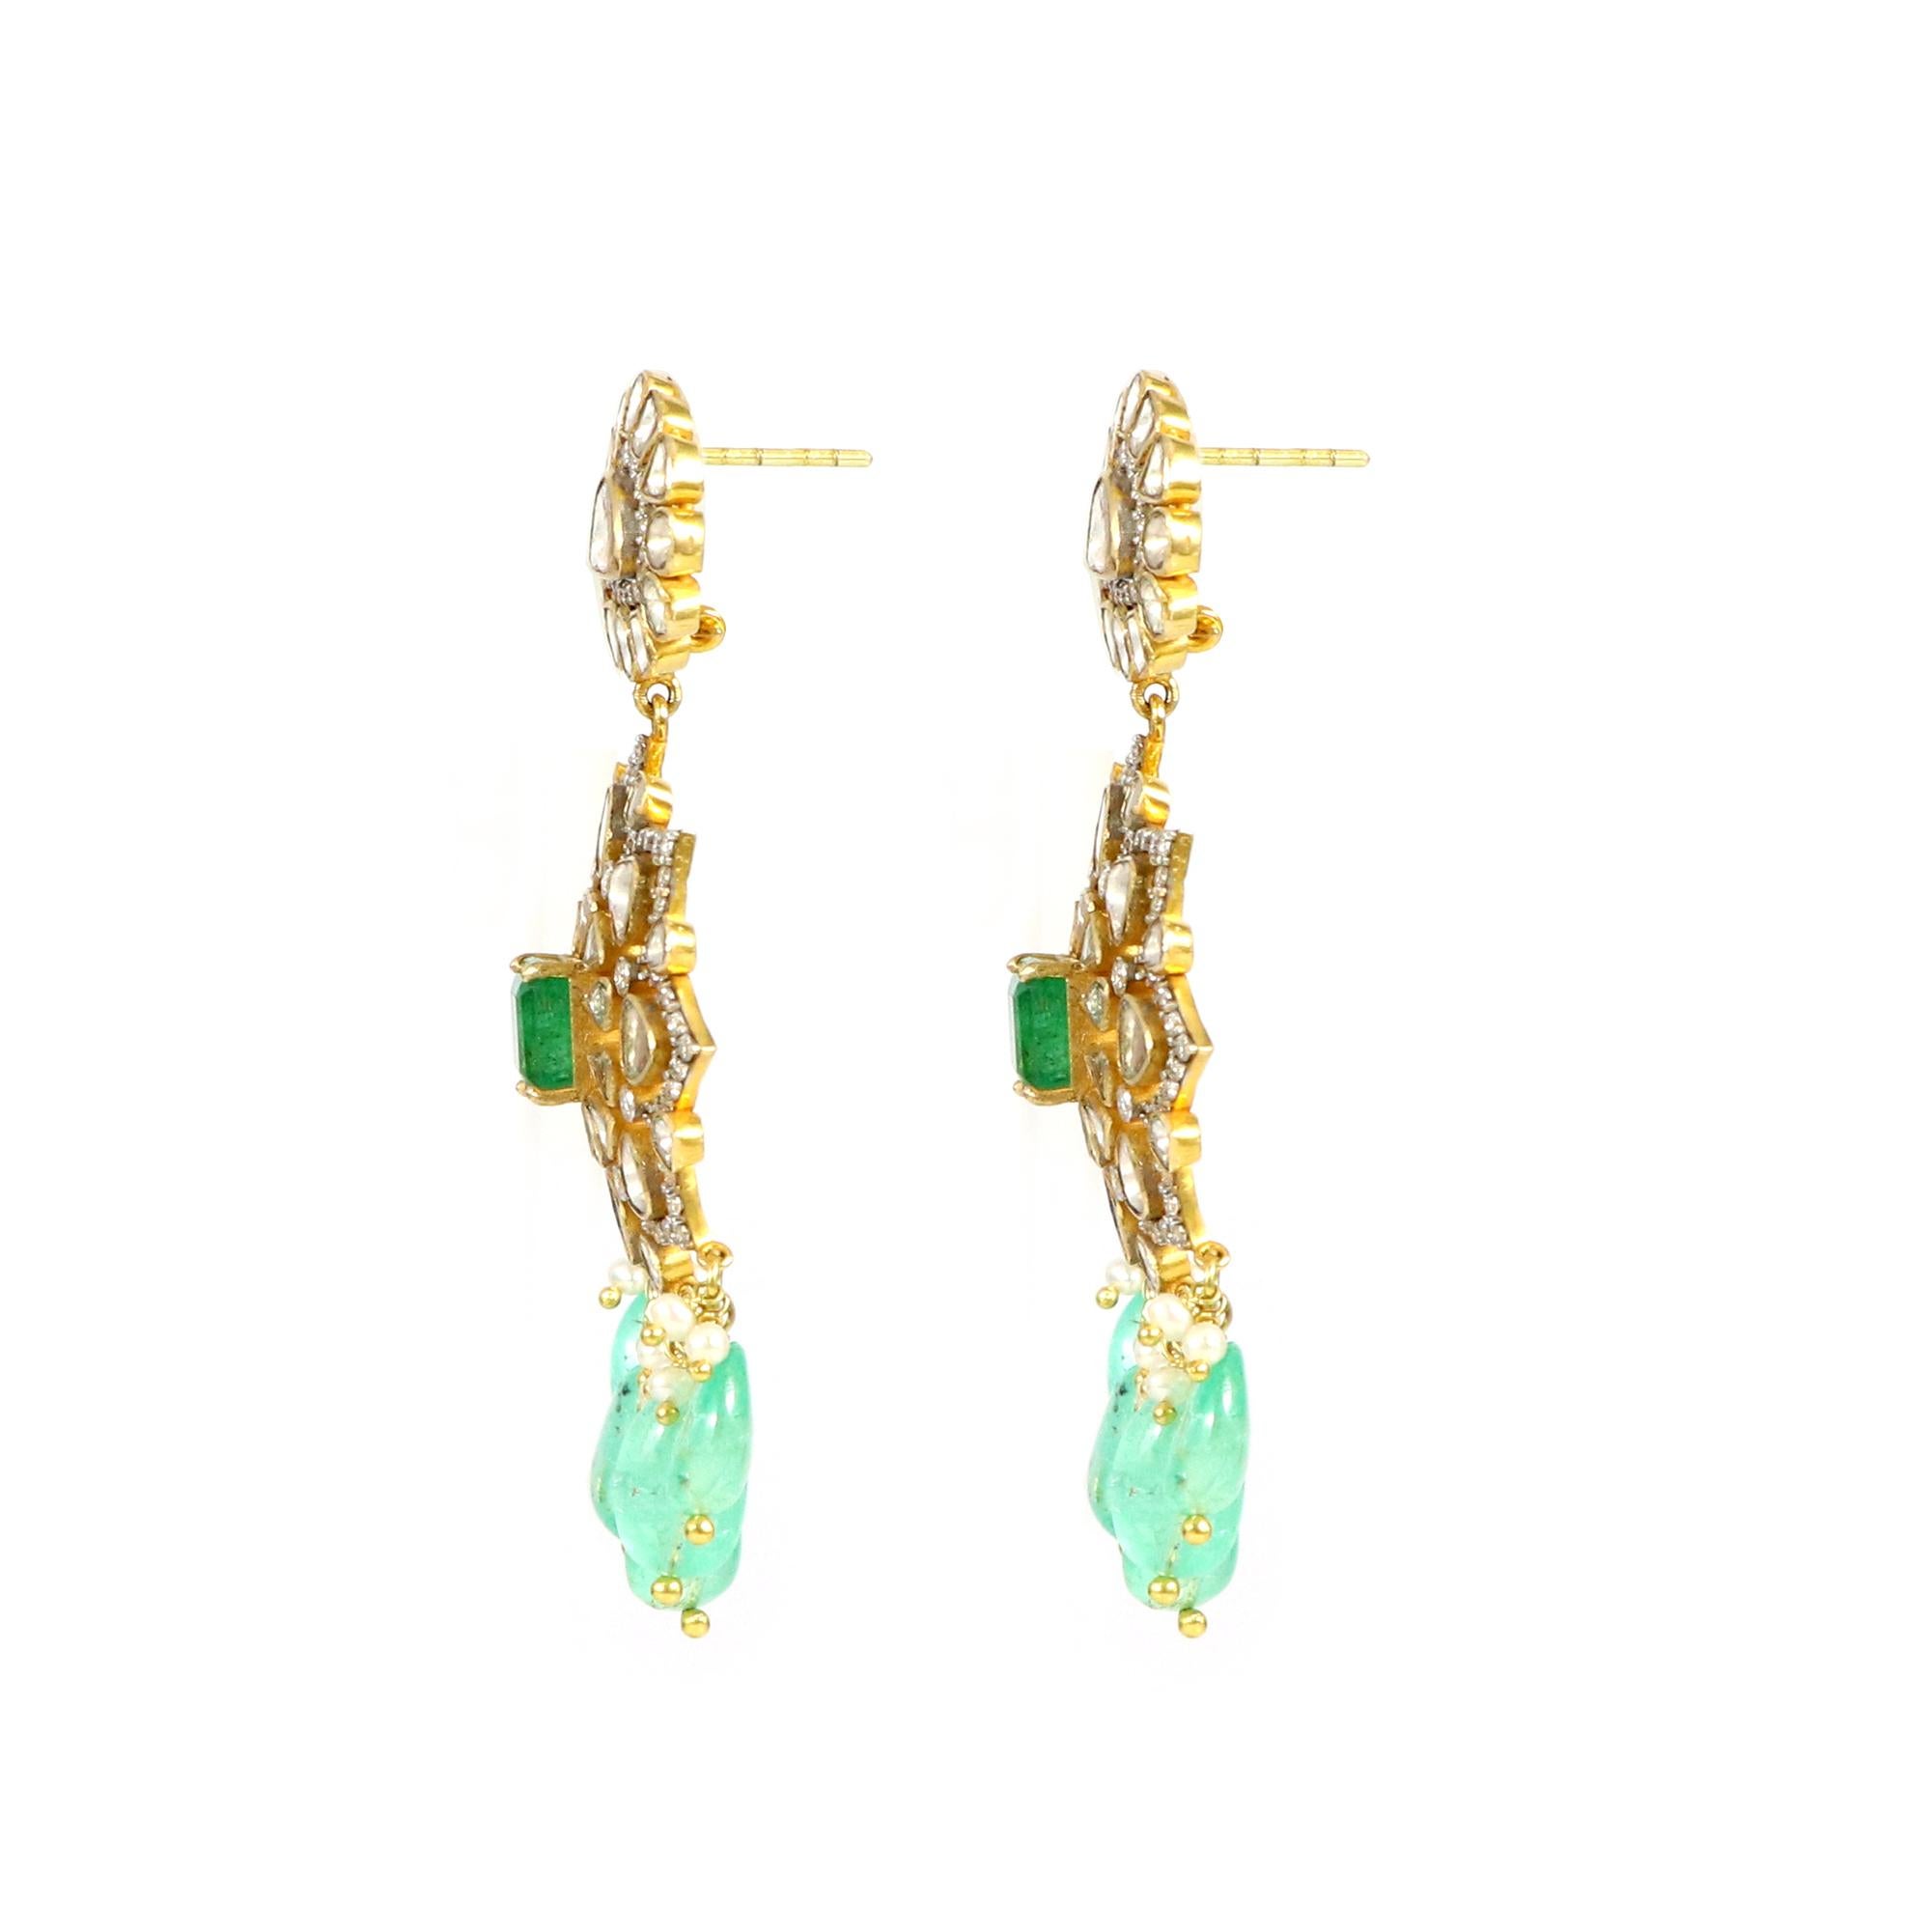 Dieses atemberaubende Paar sorgfältig gefertigter Ohrringe ist eine Symphonie aus Smaragden, Polki-Diamanten und 18 Karat Gold mit offener Fassung. Diese Ohrringe sind ein Beweis für unvergleichliche Eleganz und Raffinesse. Mit ihrer zeitlosen